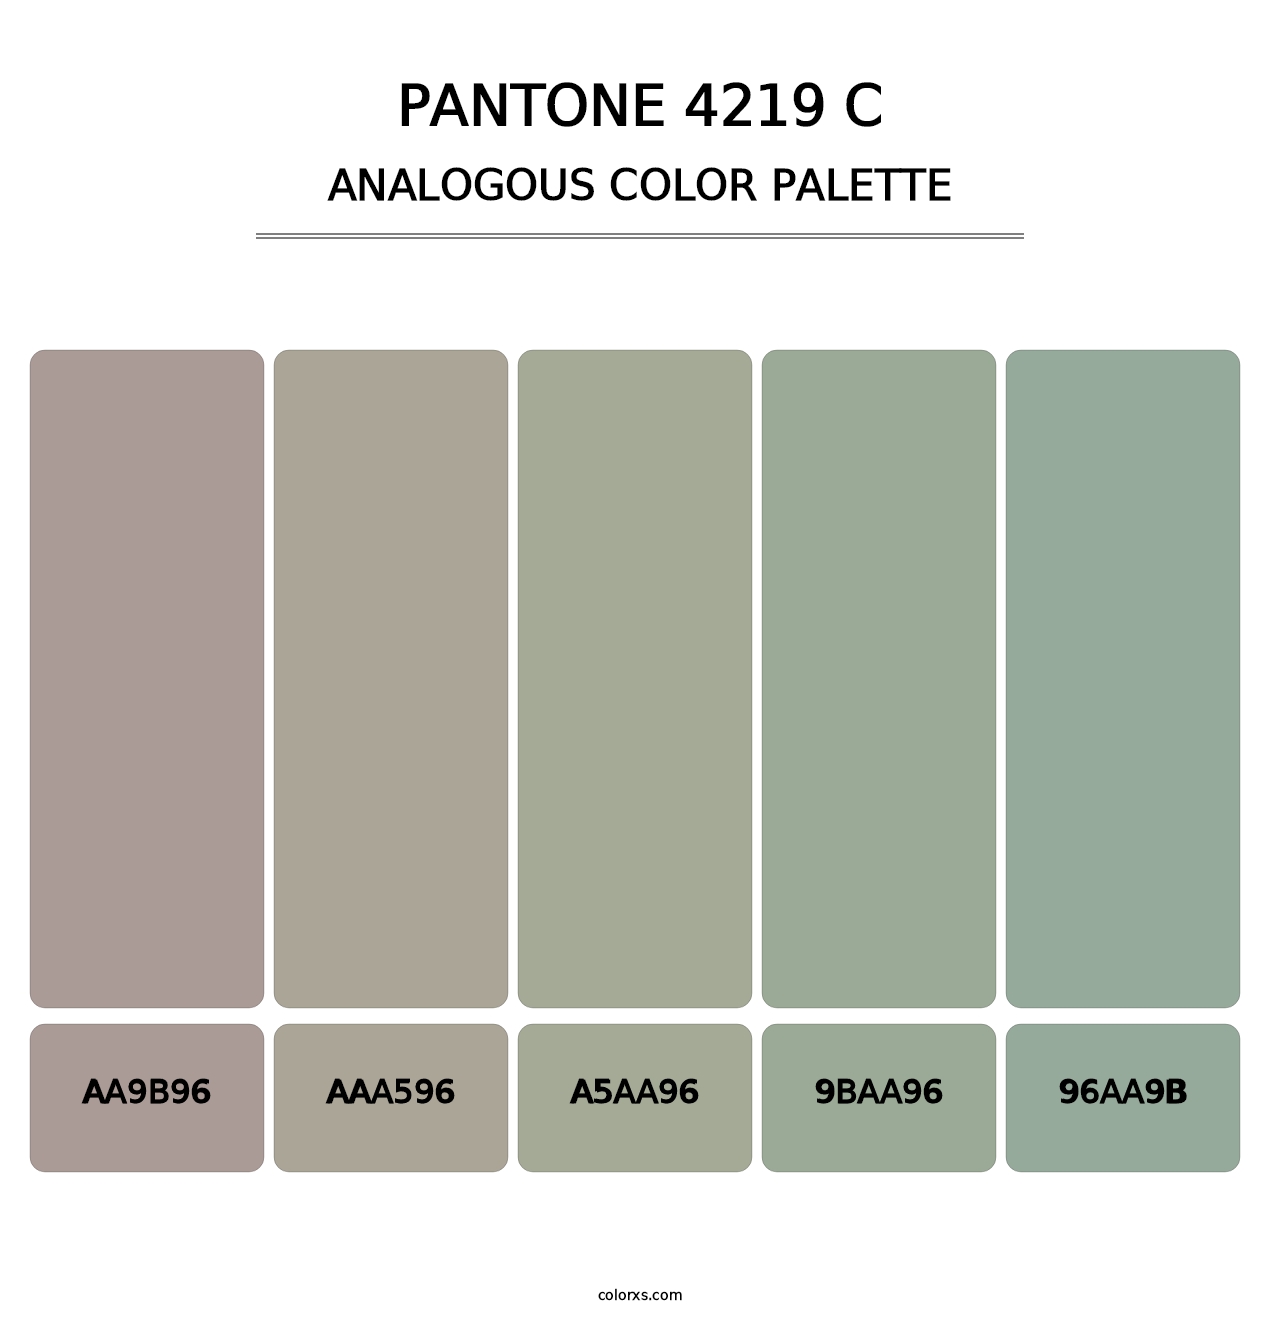 PANTONE 4219 C - Analogous Color Palette